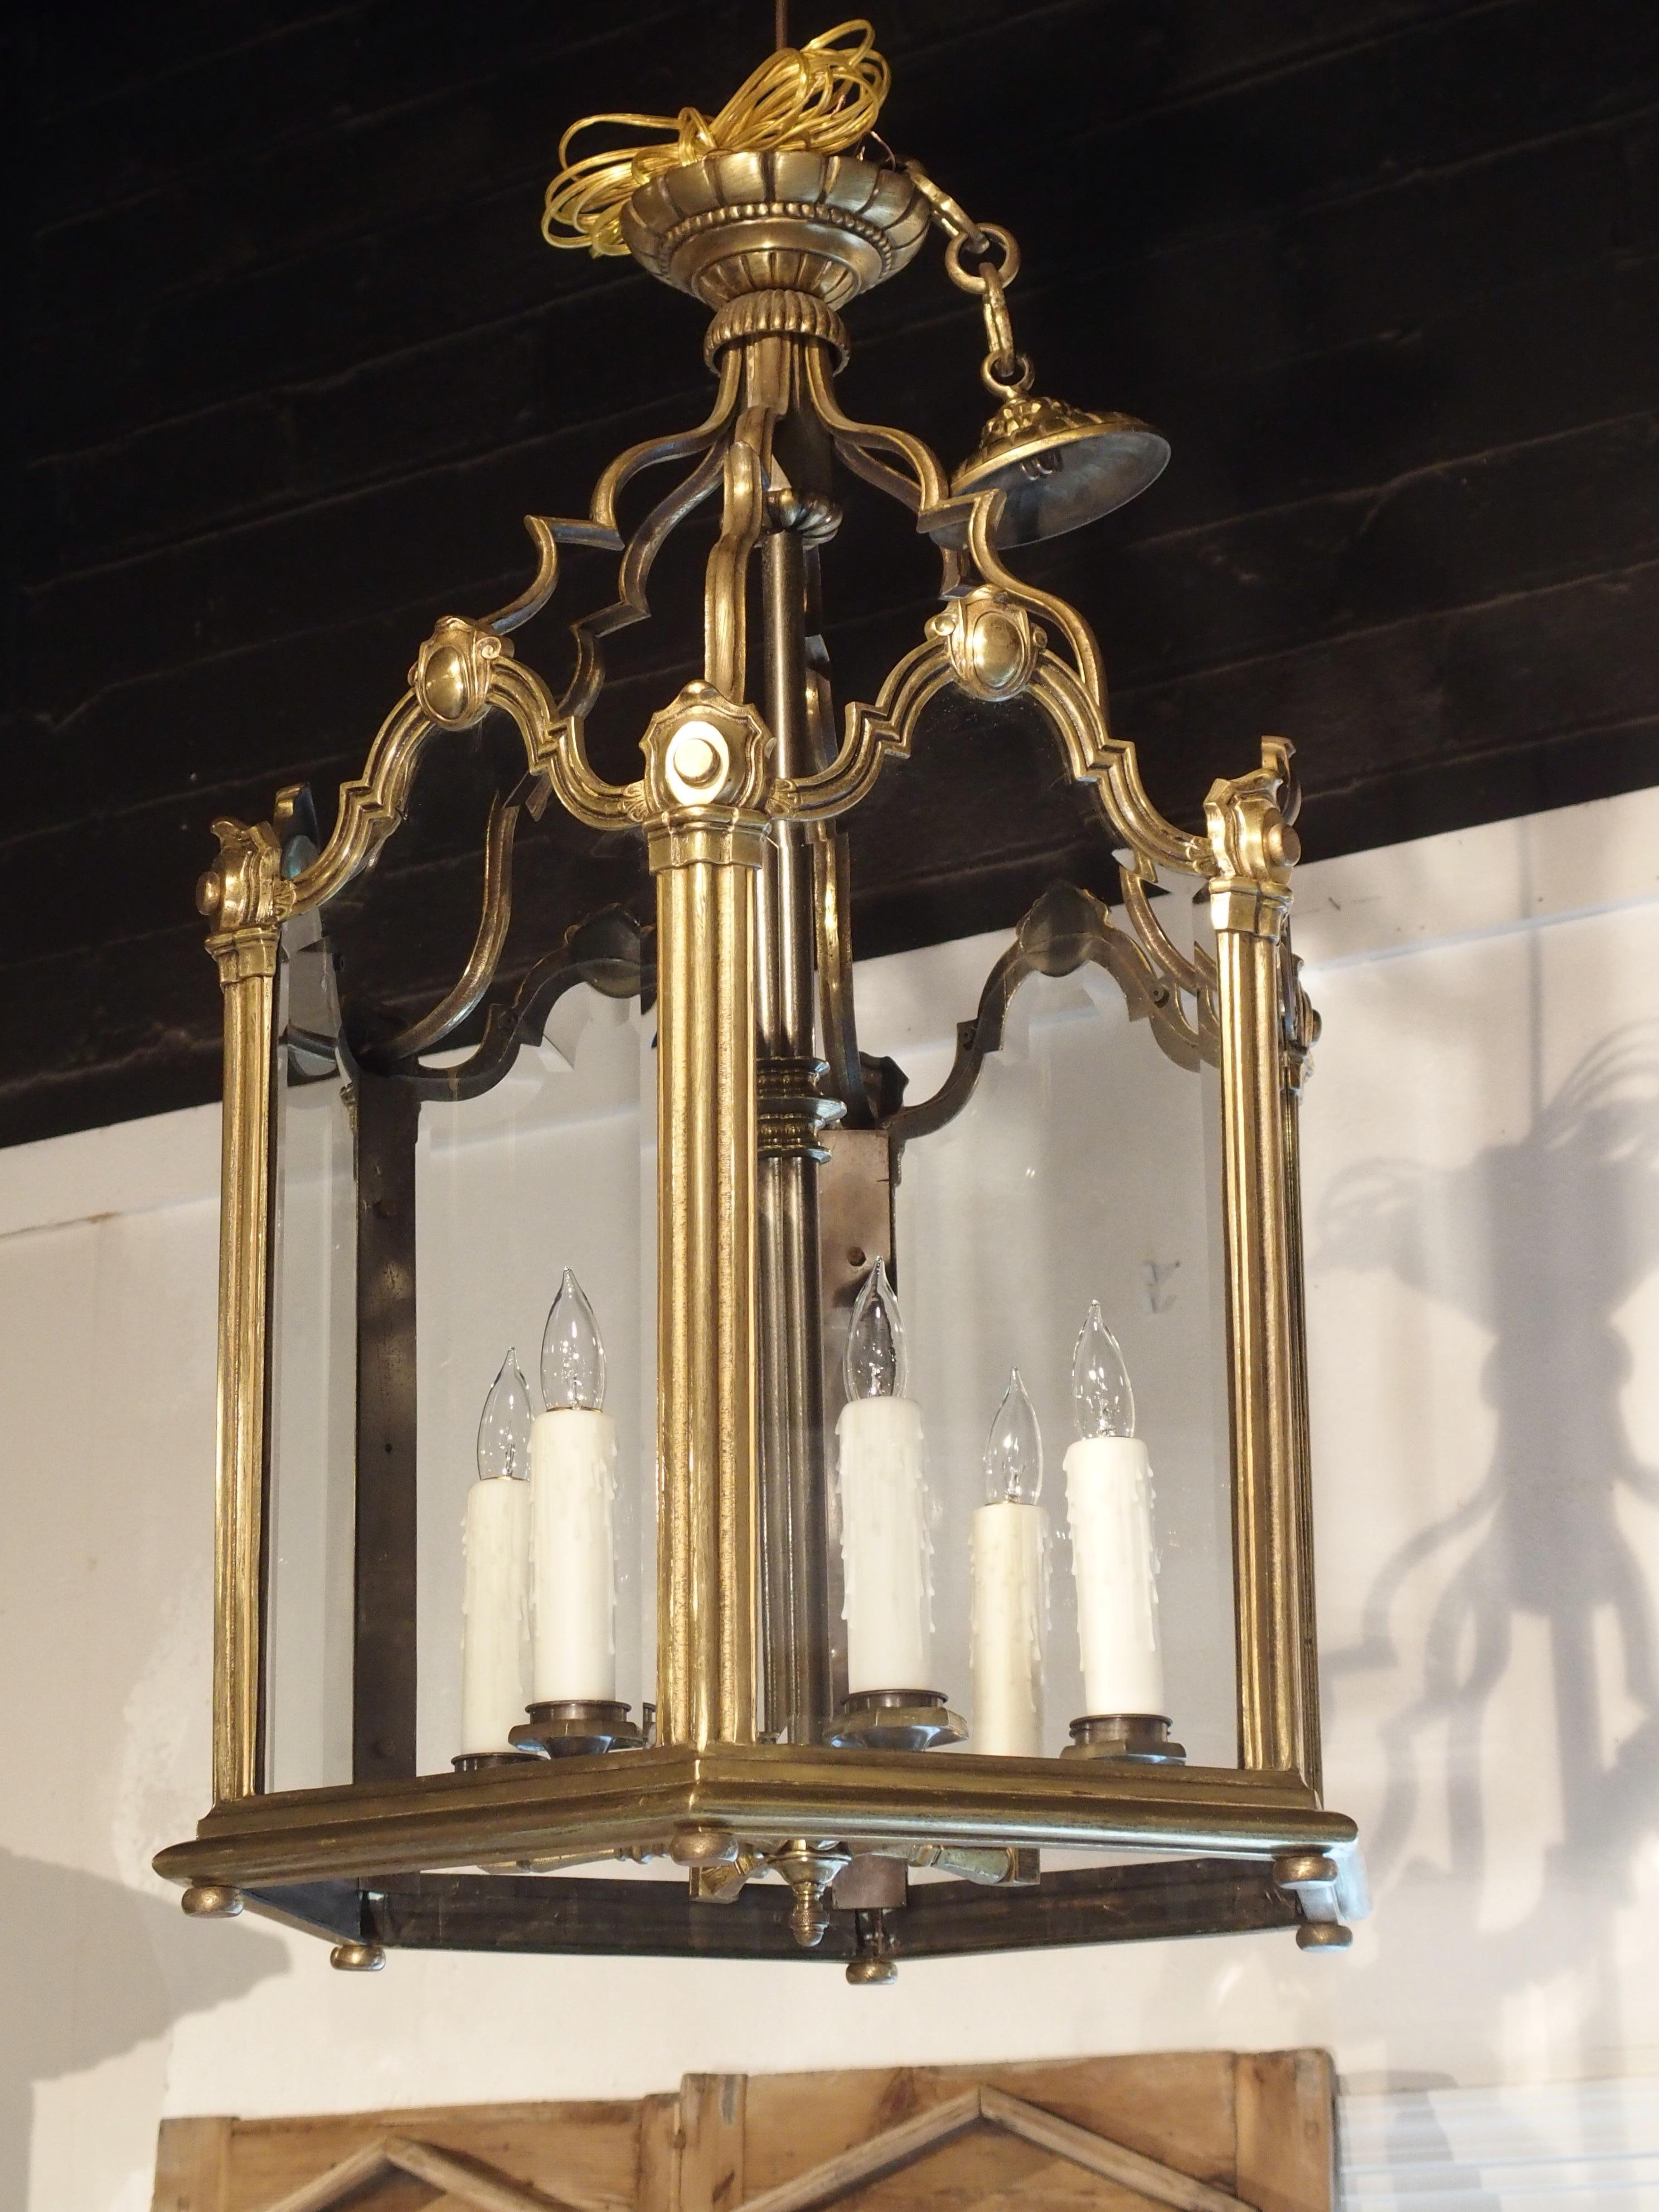 Cette élégante et grande lanterne française en bronze a été produite vers 1890 dans le style Louis XV. Les vitres ont été disposées en un hexagone de 25 pouces de diamètre avec une grappe centrale de six lumières.

Le haut du verre à bord biseauté